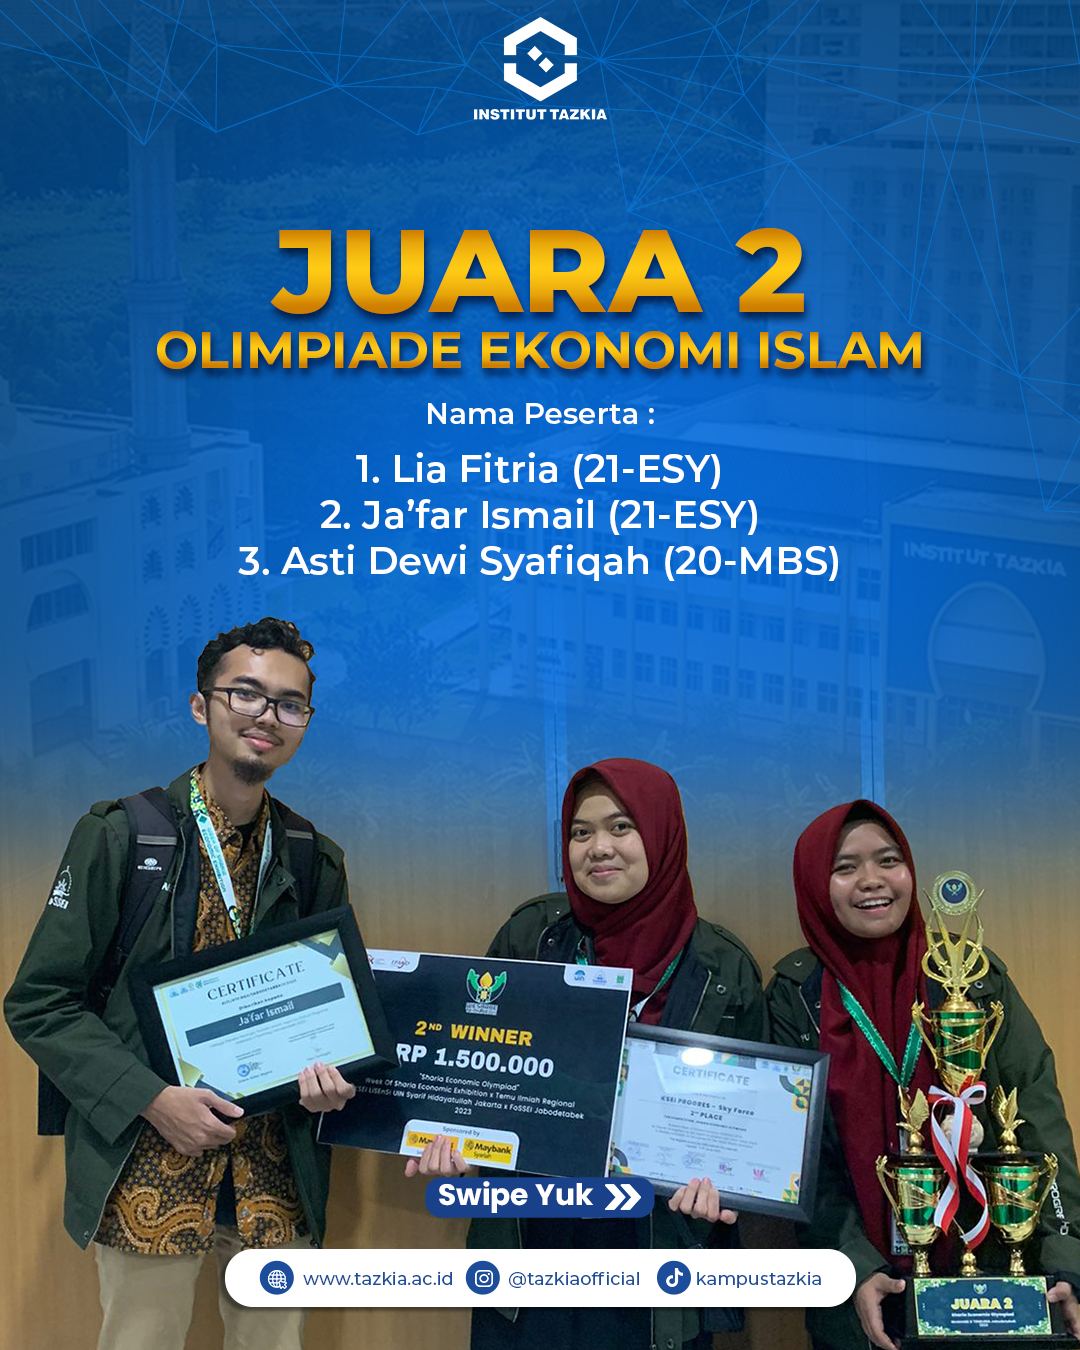 Juara 2 Olimpiade Ekonomi Islam